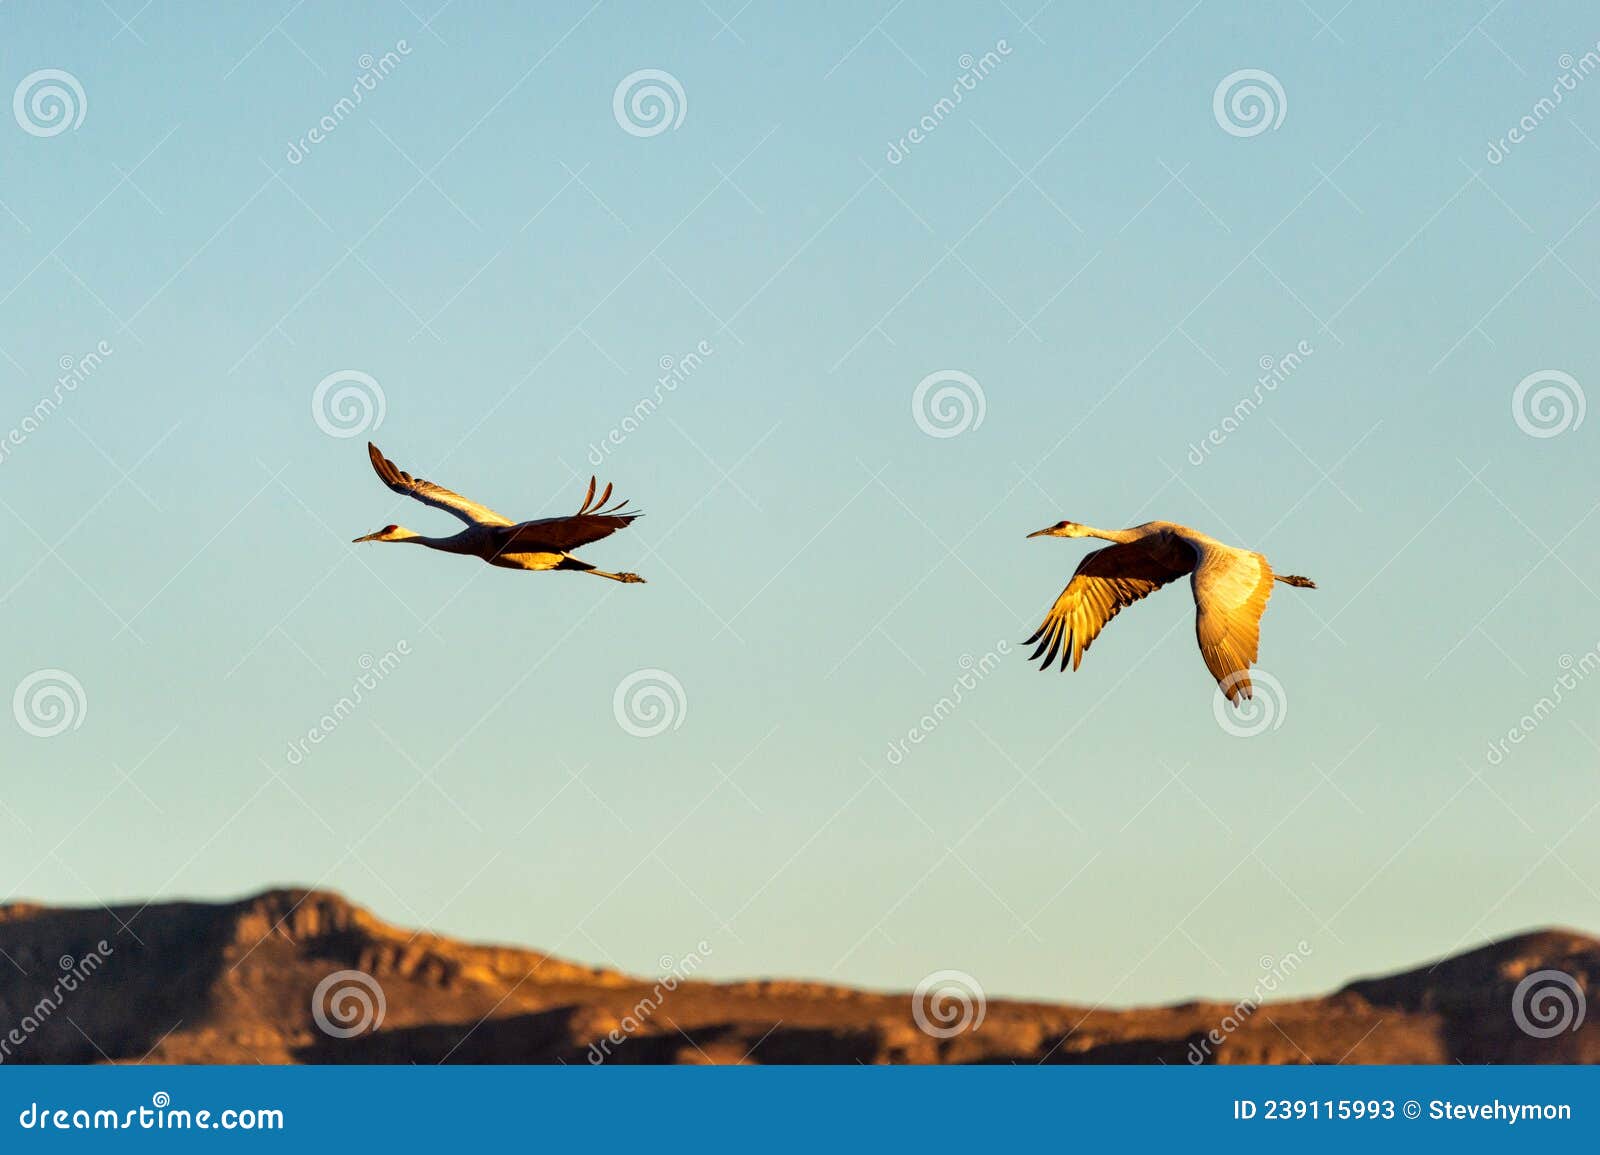 sandhill cranes soaring over bosque del apache